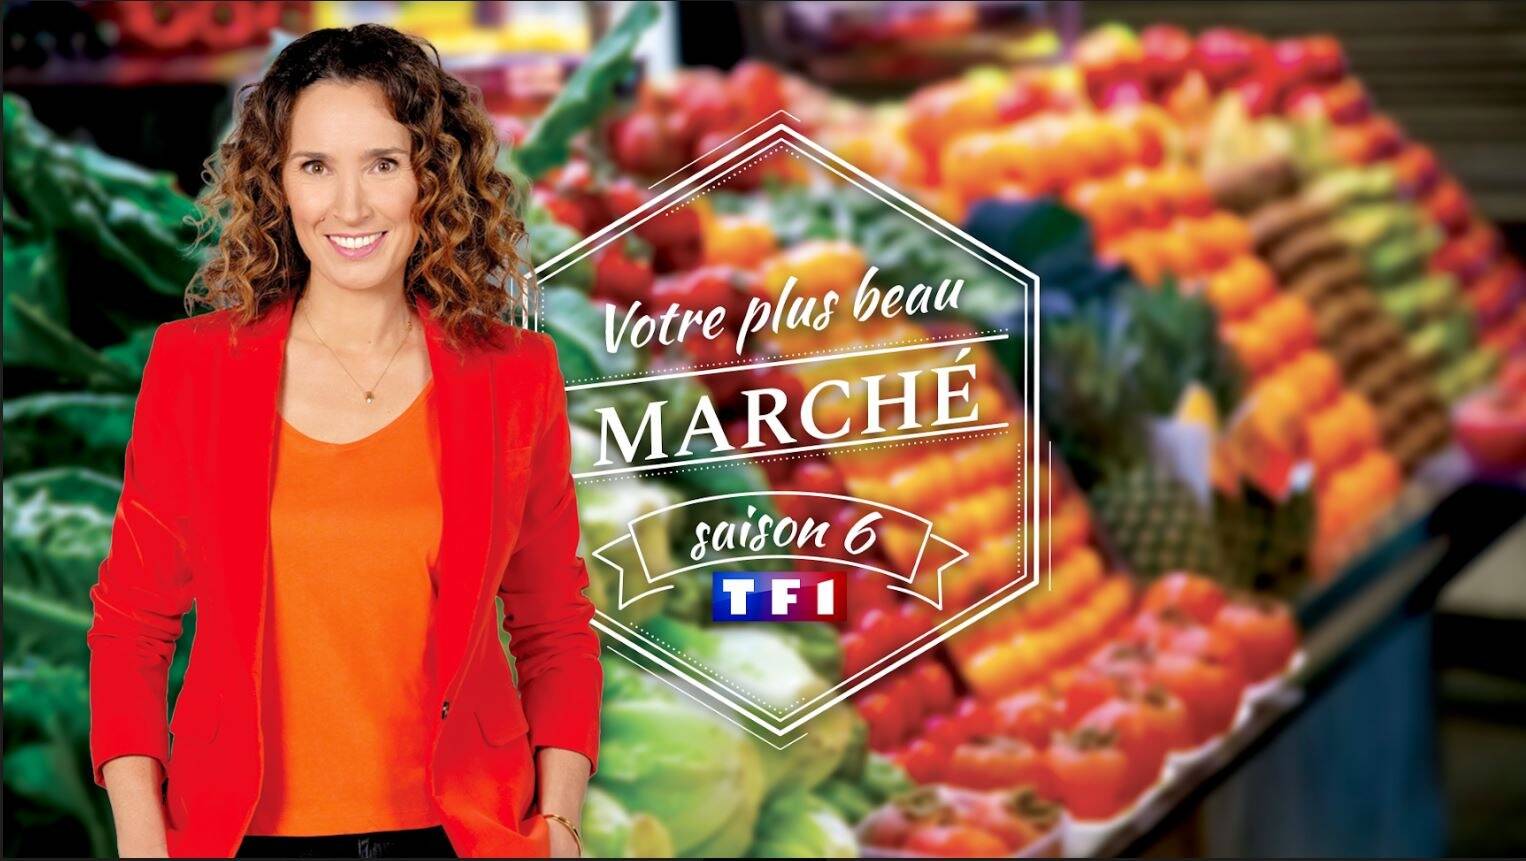 Concours Votre plus beau marché: votez pour le plus beau marché des  Alpes-Maritimes et du Var - Var-Matin